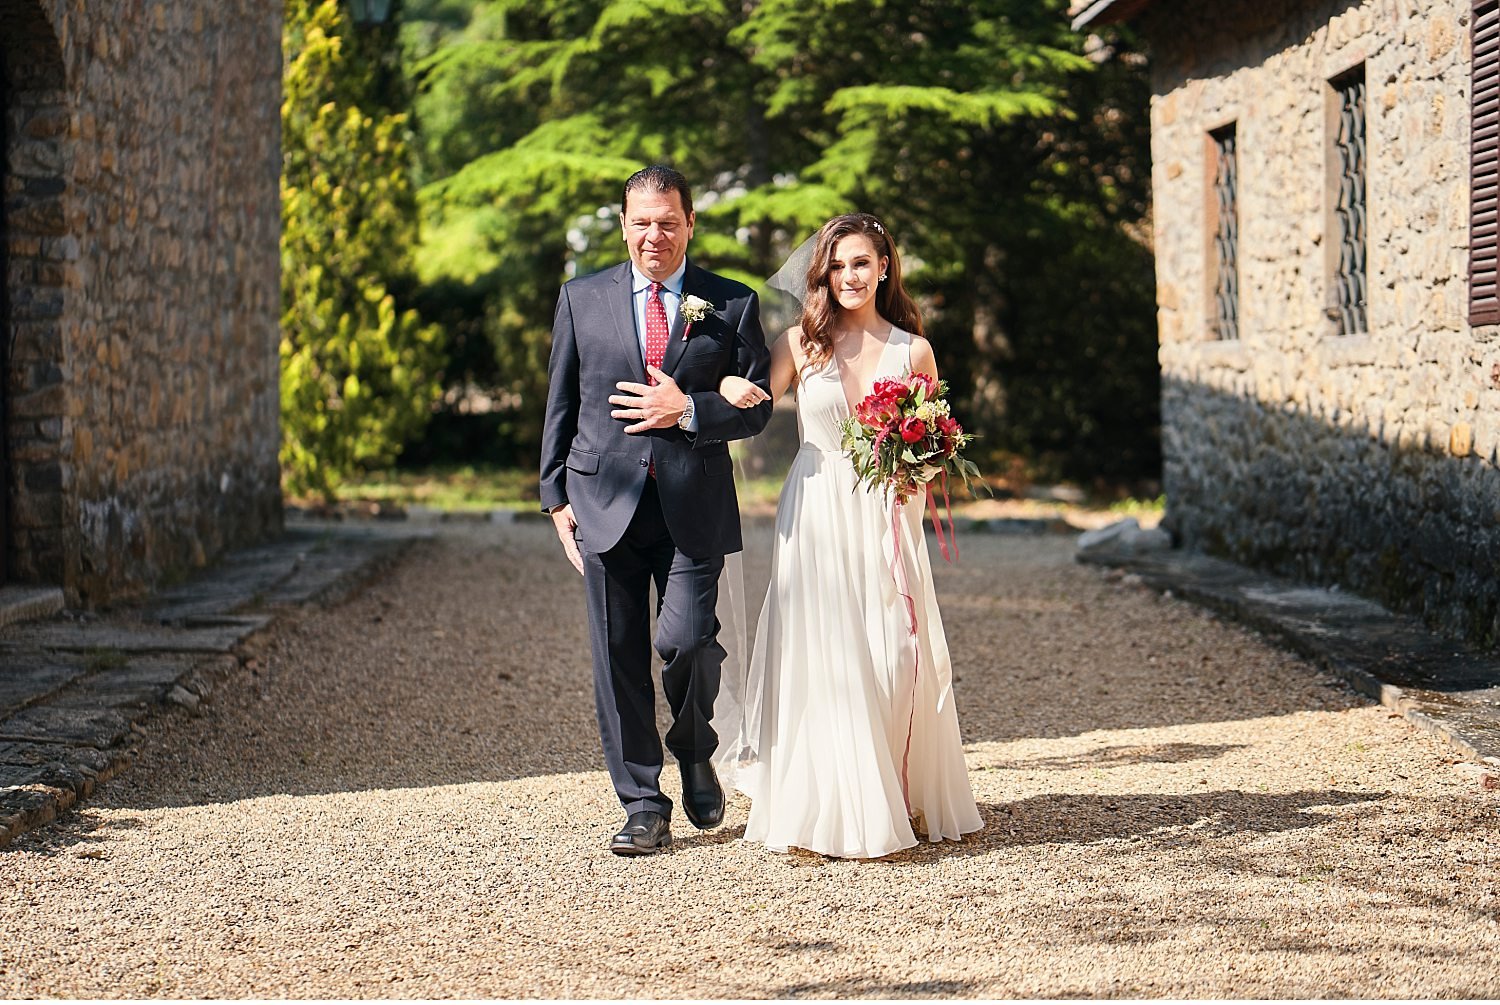  Elegante matrimonio in Toscana nel giardino di una villa Cini ad Arezzo - Immortalate il vostro giorno speciale con questa splendida foto di un matrimonio incantevole in una delle più belle ville toscane. La cerimonia nel giardino sottolinea l'atmos